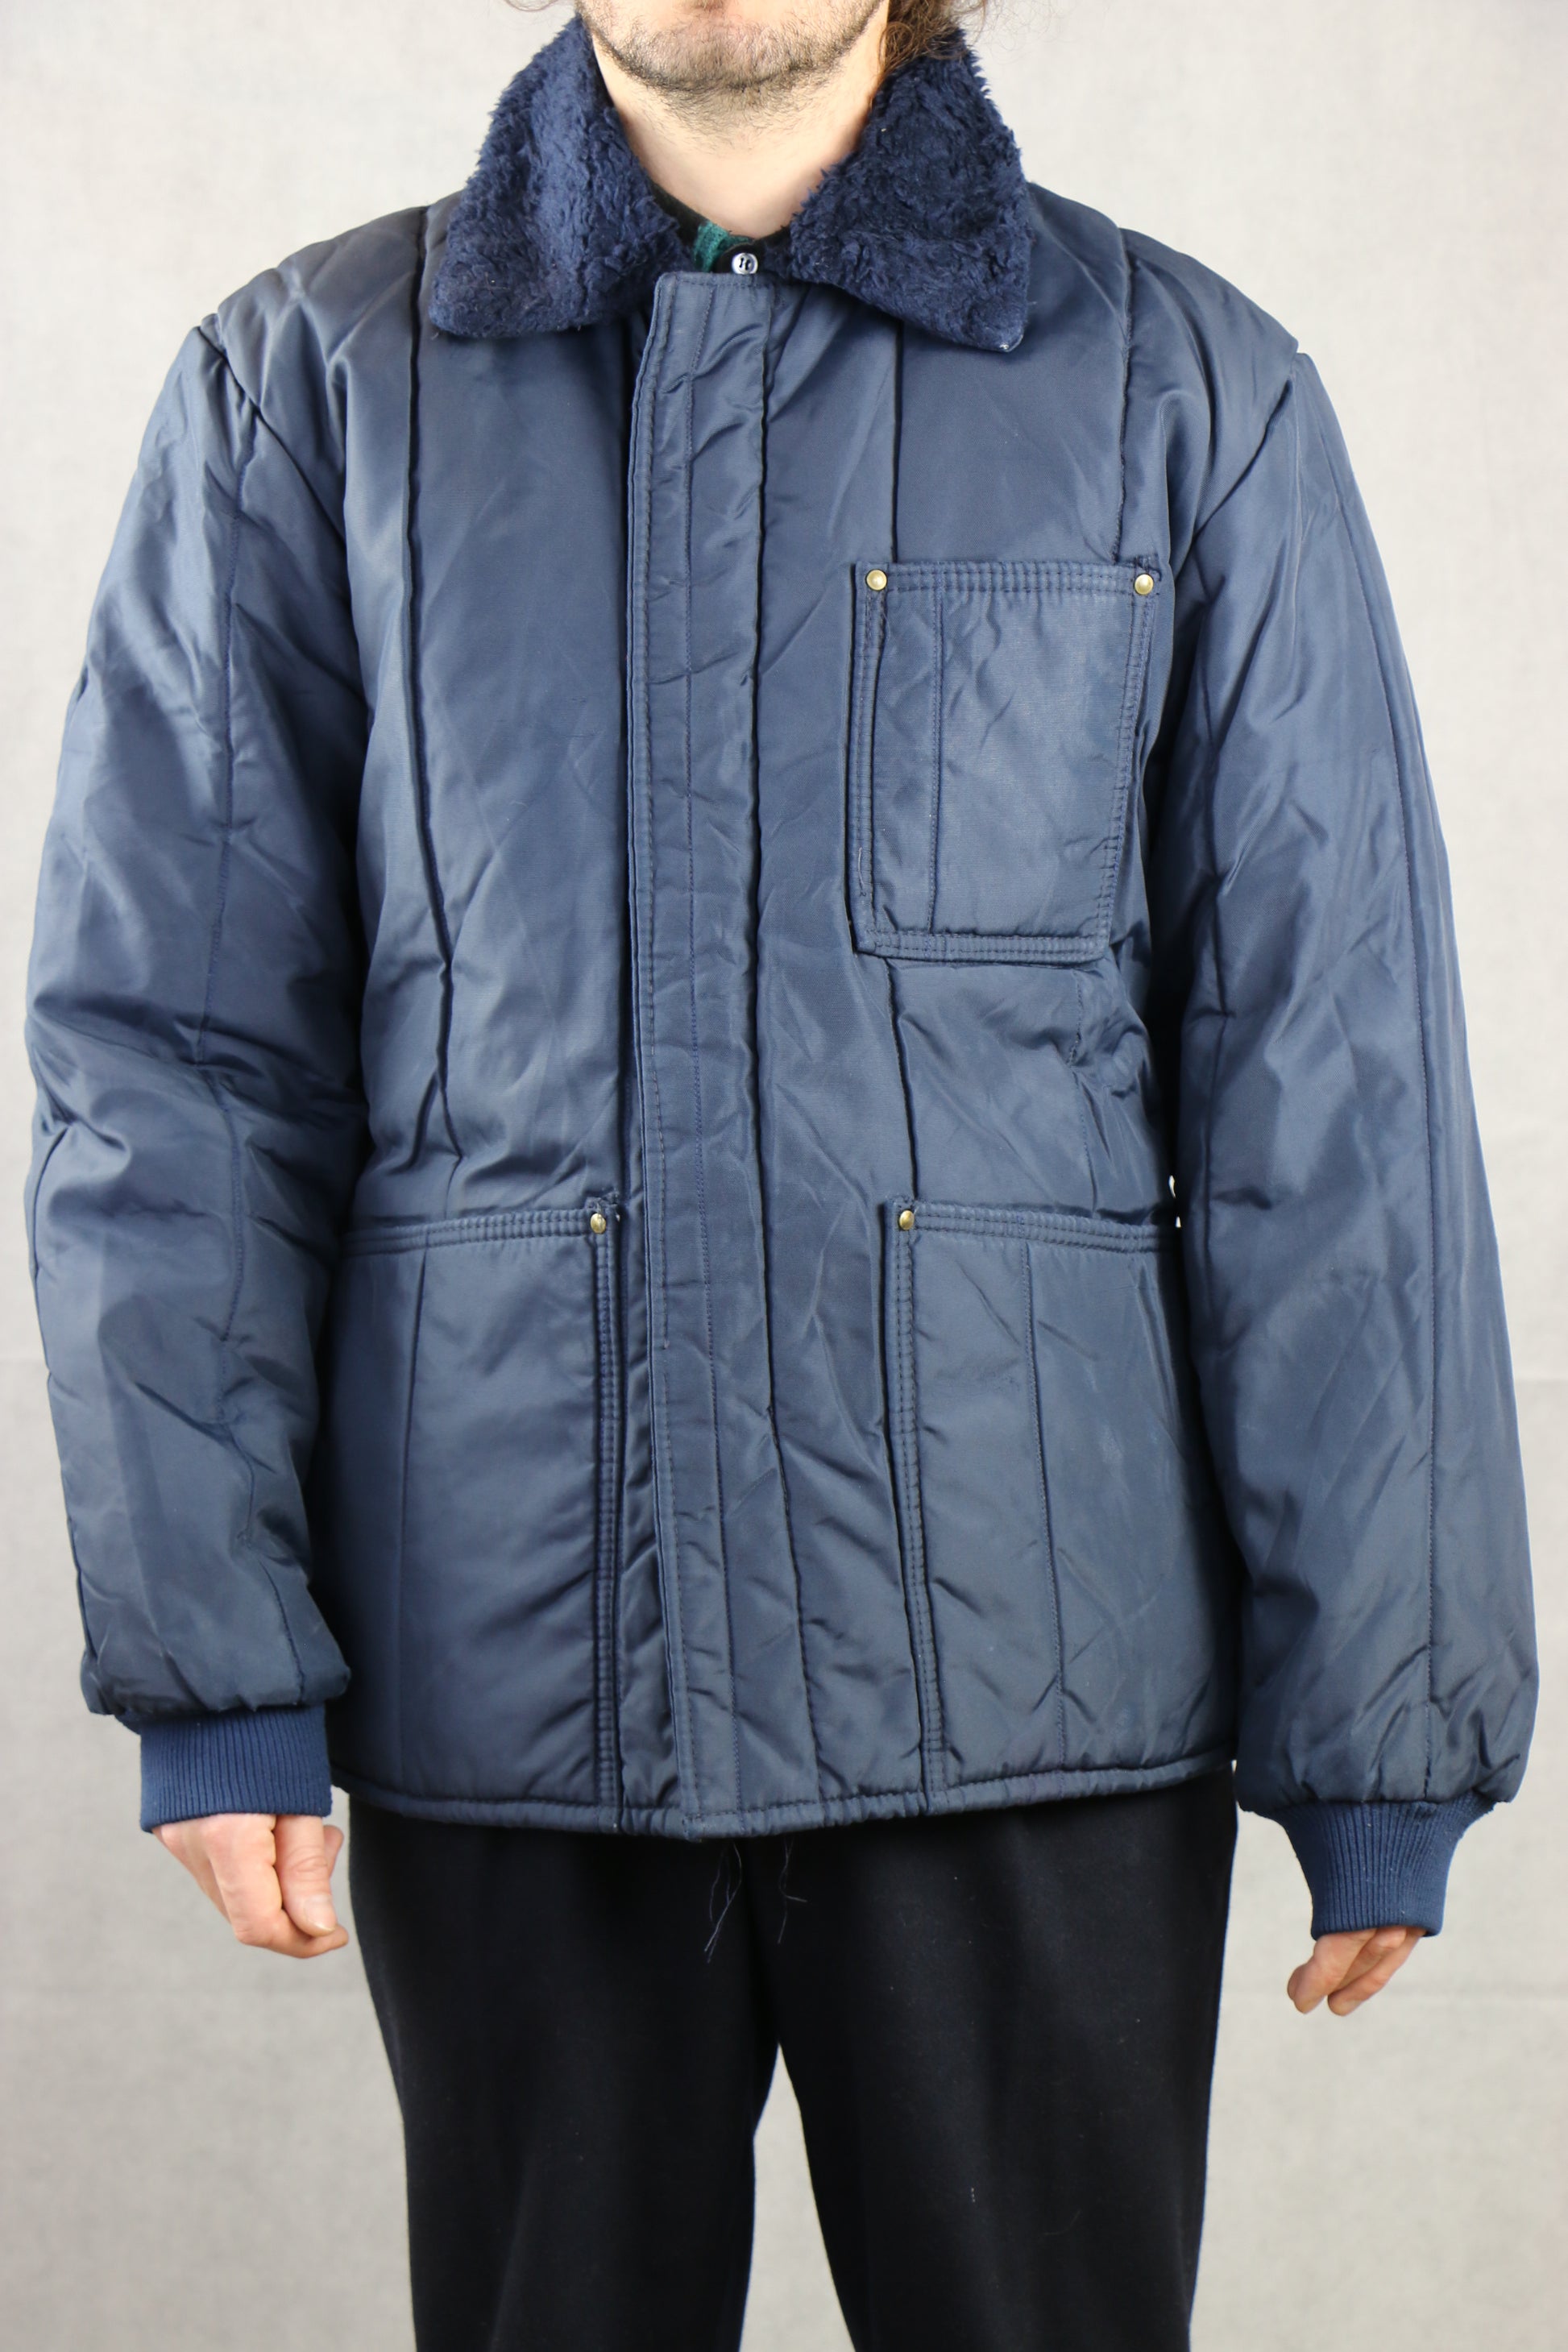 Samco Sportswear Co. Winter Jacket, clochard92.myshopify.com